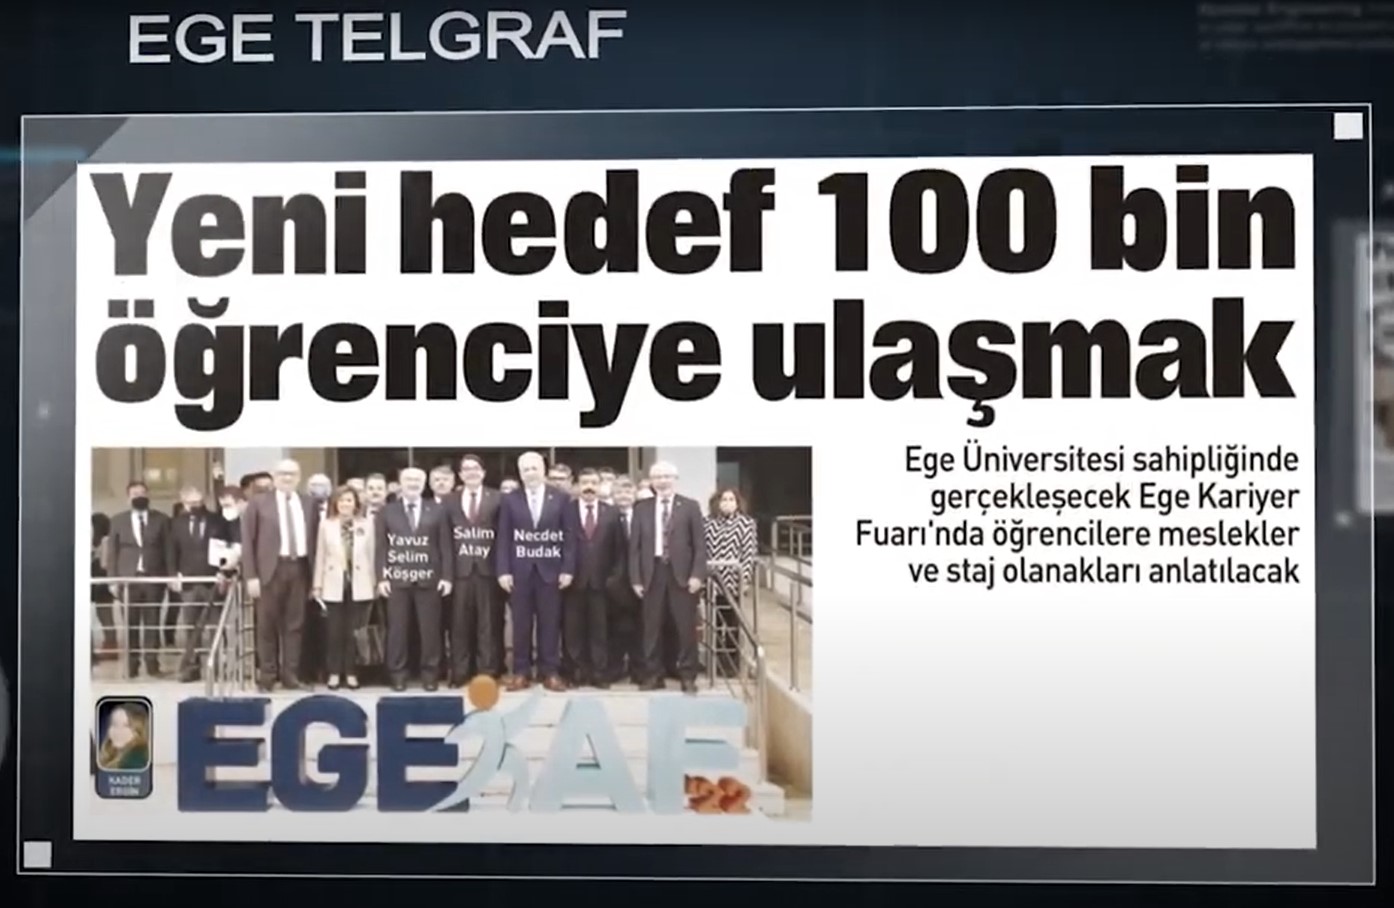 Yeni hedef 100bin öğrenciye ulaşmak - Ege Telgraf